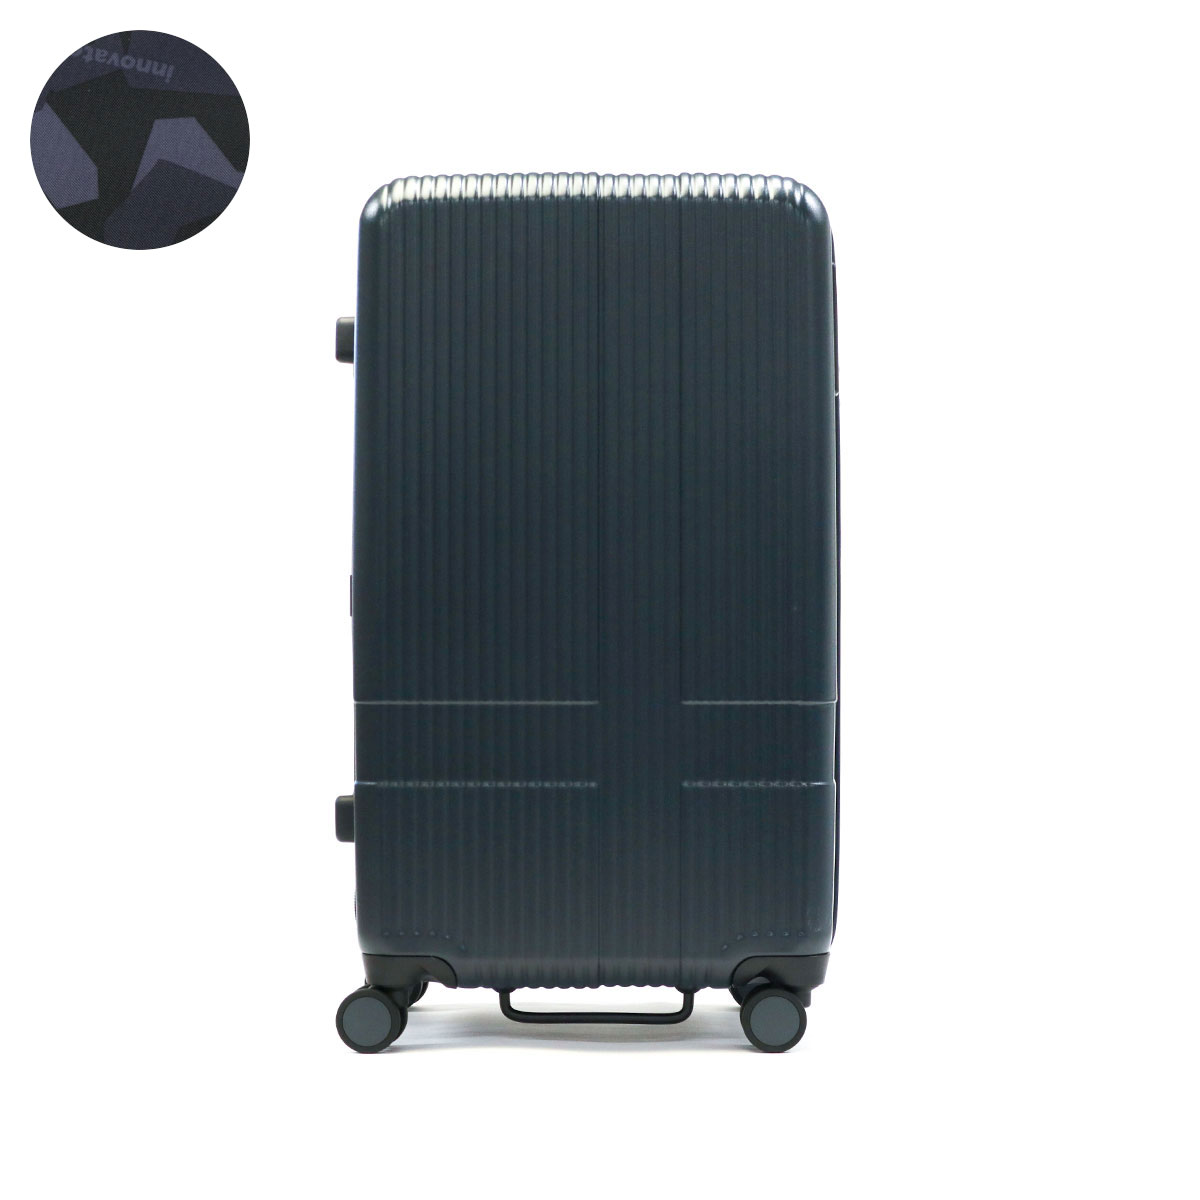 正規品2年保証 イノベーター スーツケース キャリーケース Mサイズ innovator ストッパー 軽量 おしゃれ ブランド かわいい 6泊 7泊  INV70